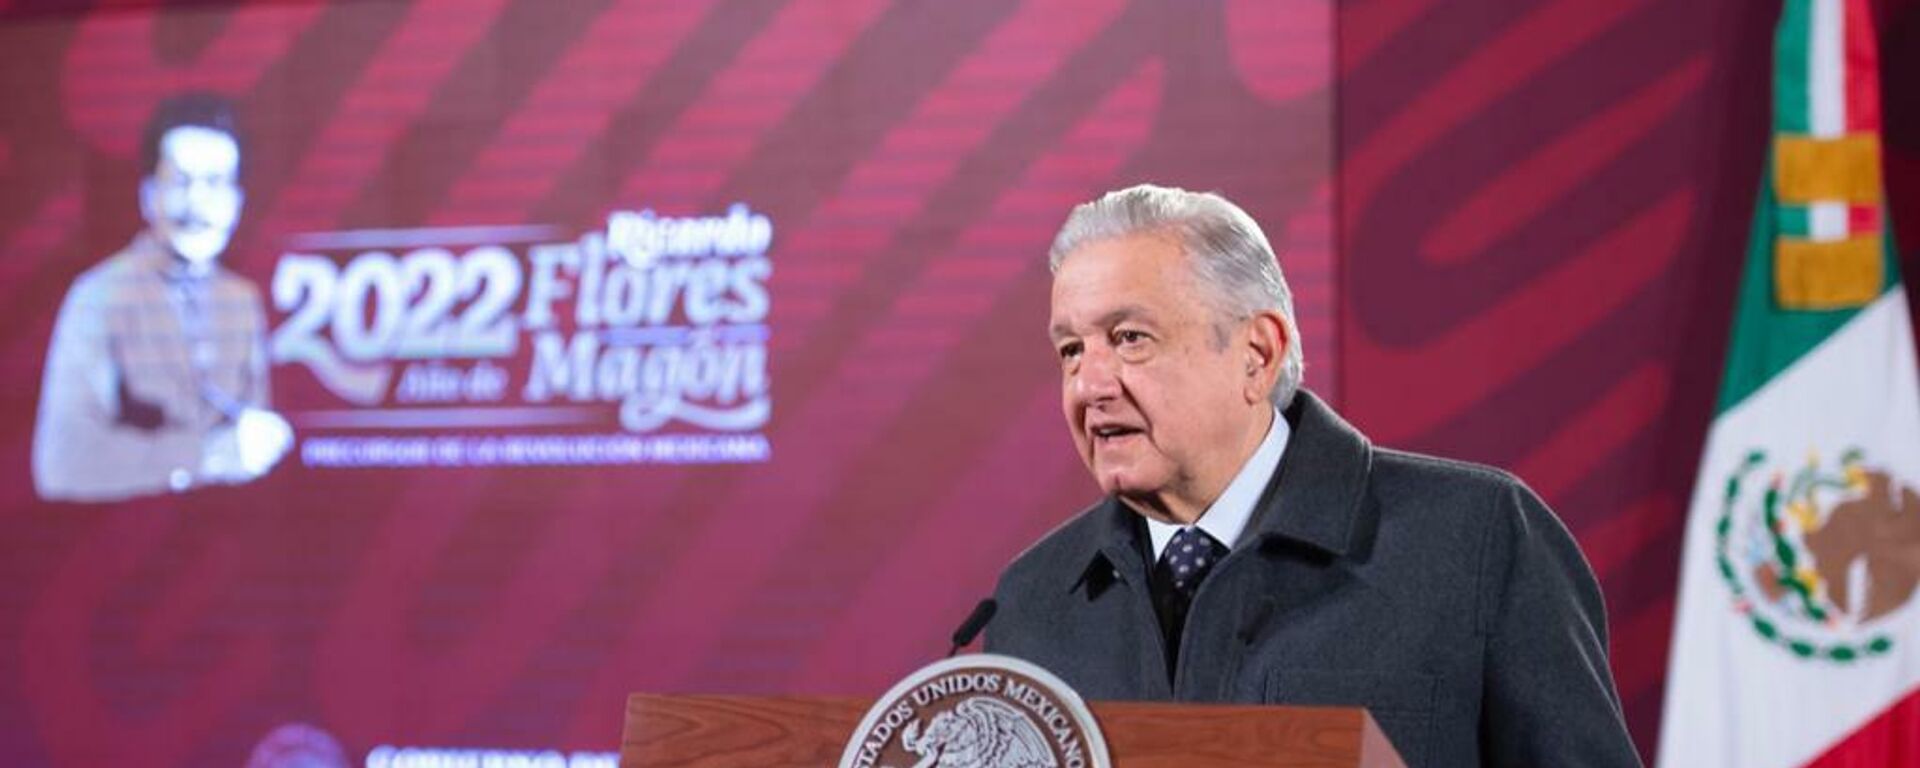 Andrés Manuel López Obrador, presidente de México. - Sputnik Mundo, 1920, 18.01.2022